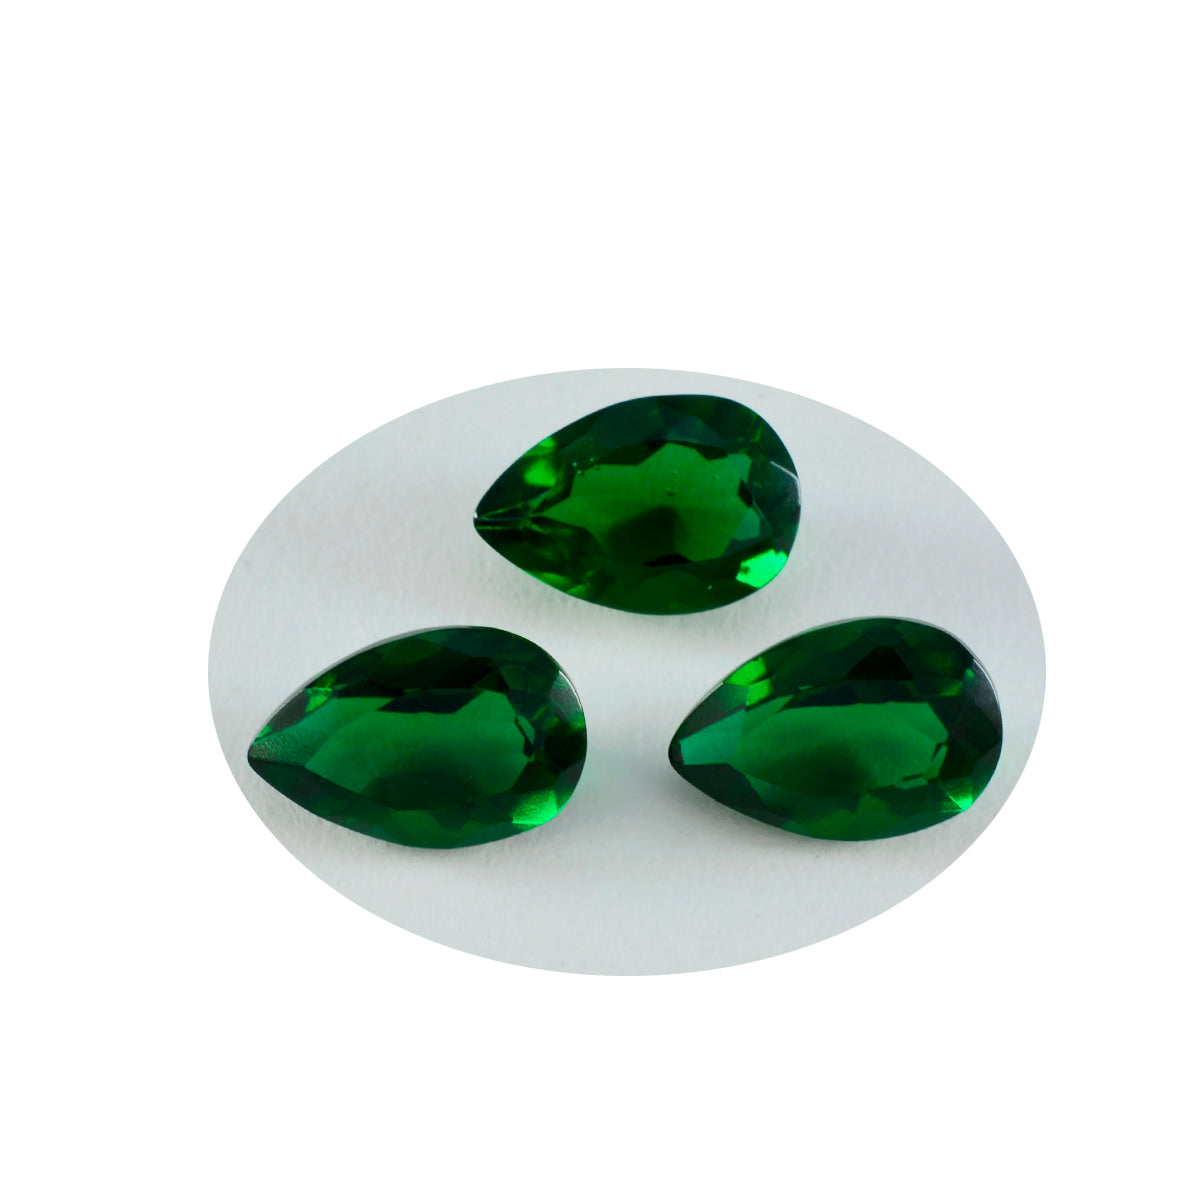 riyogems 1 шт. зеленый изумруд граненый cz 8x12 мм драгоценный камень грушевидной формы прекрасного качества